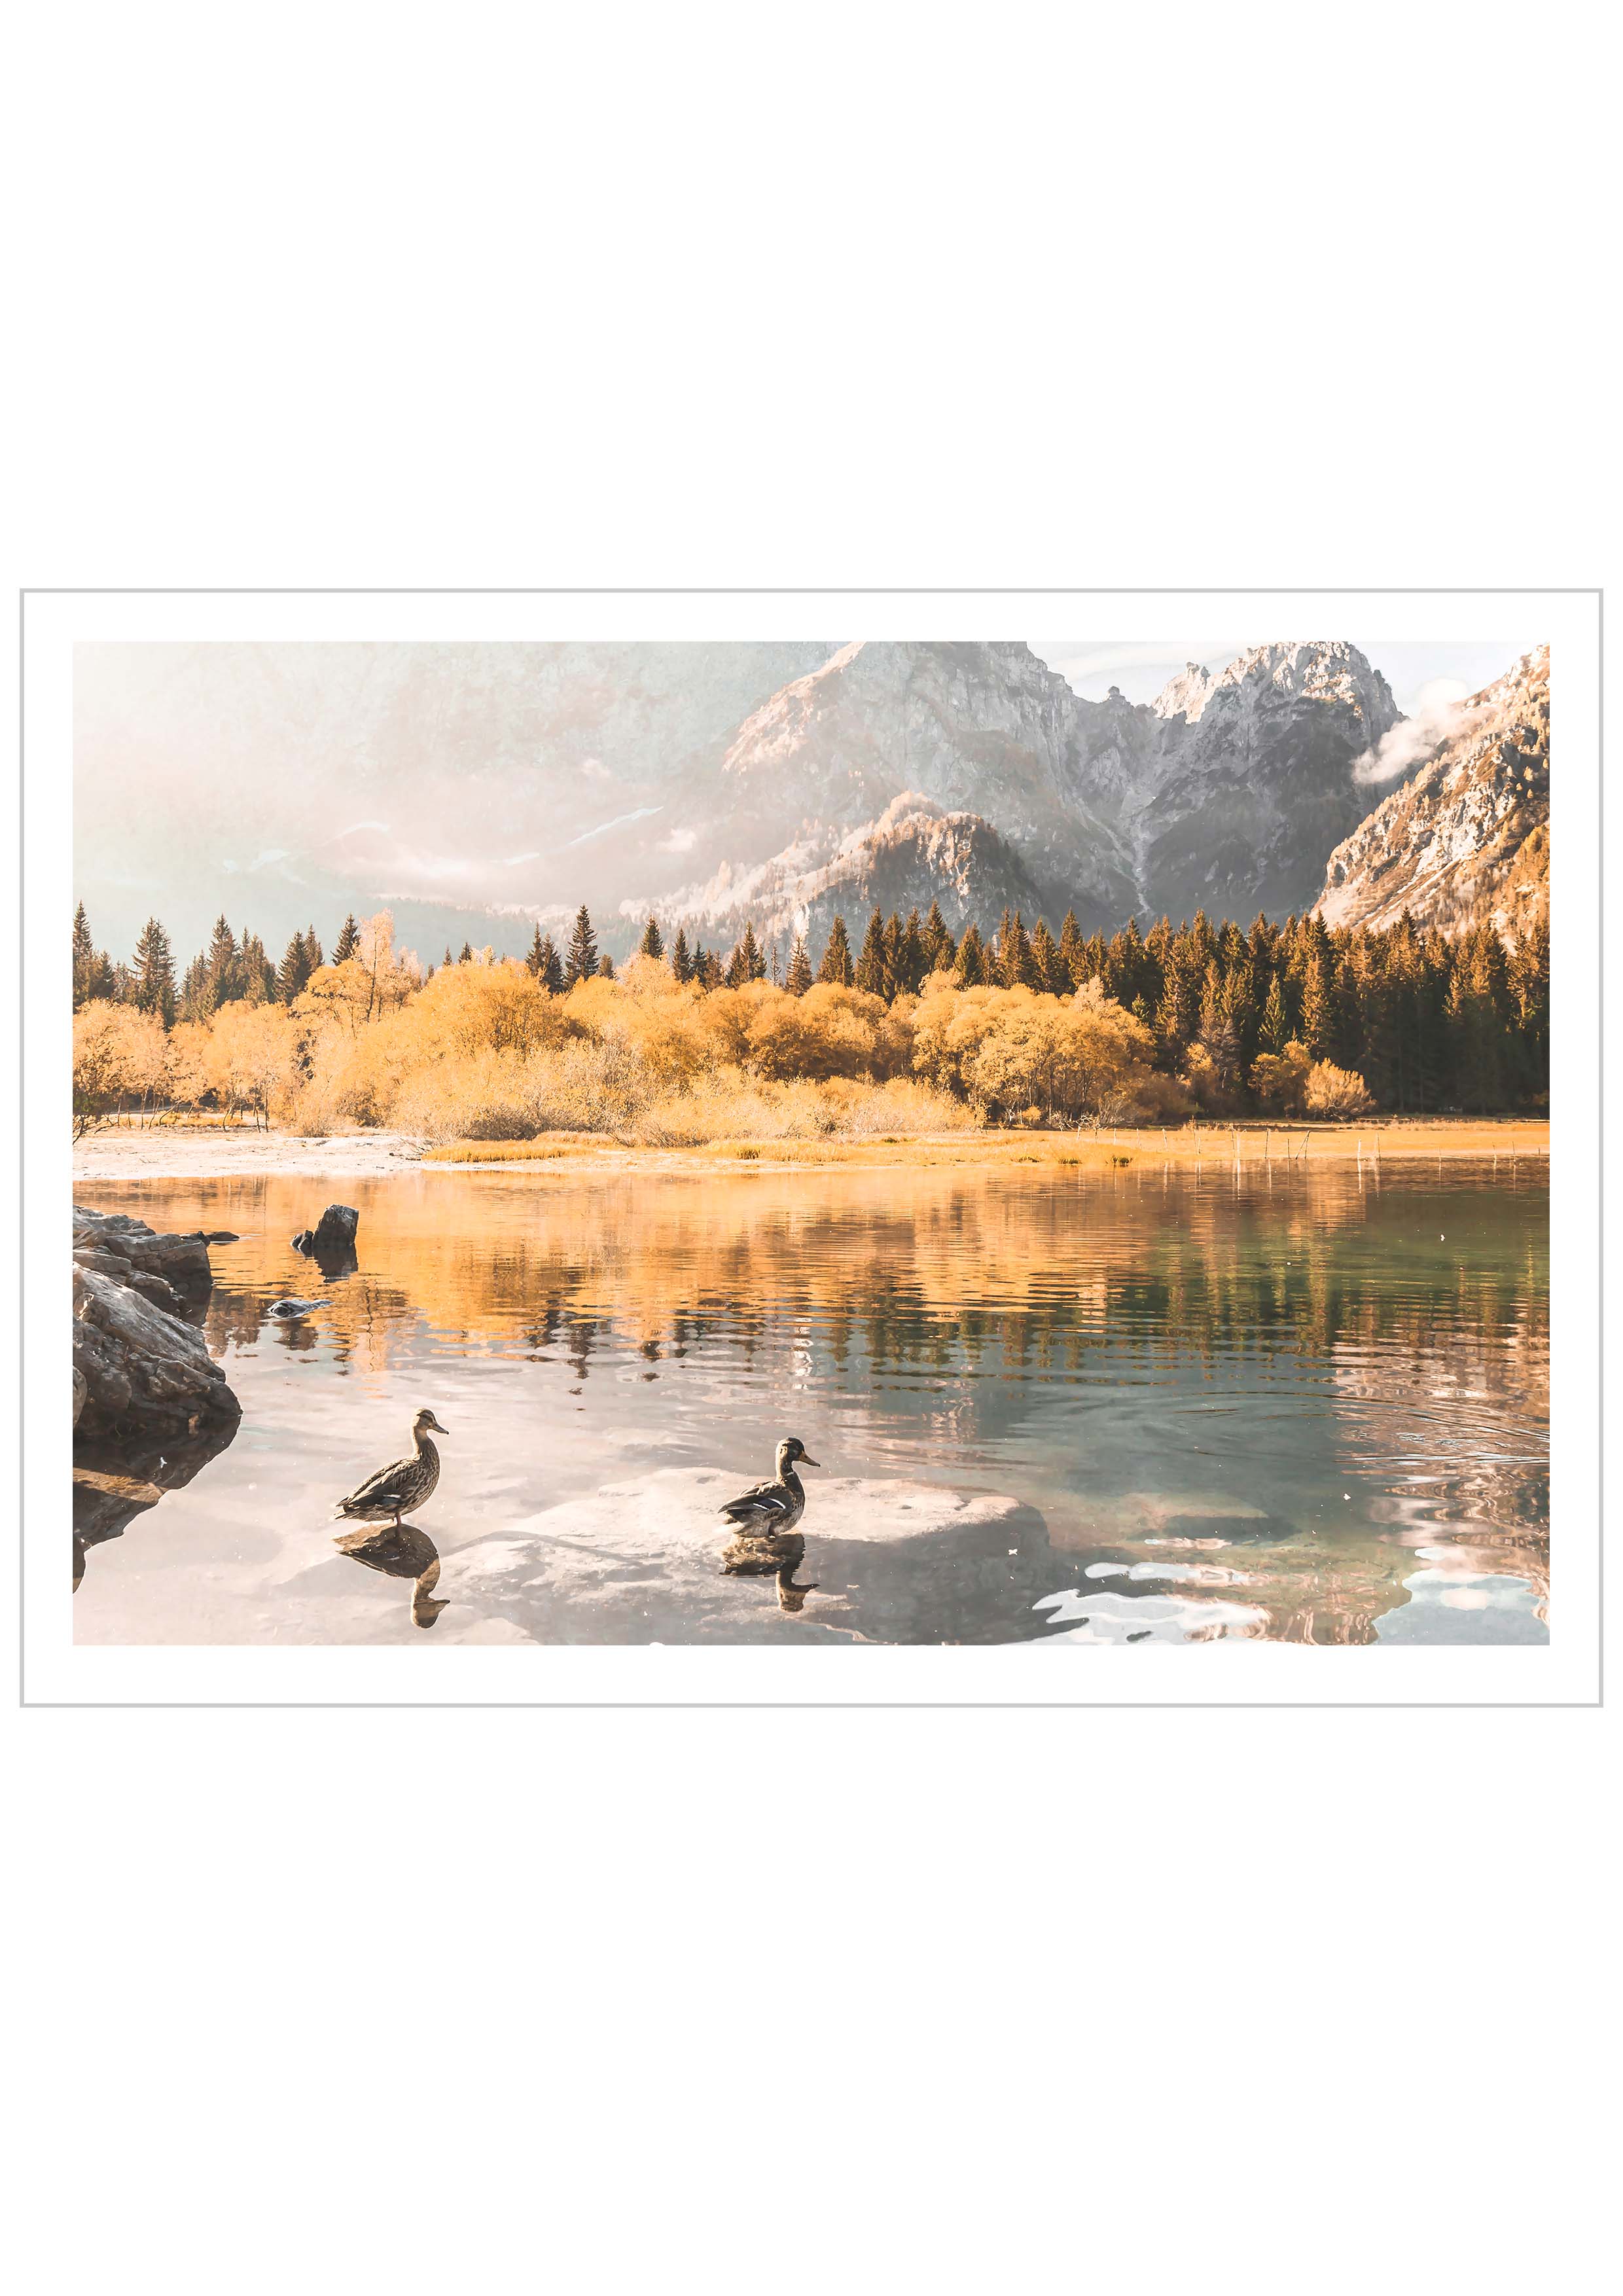 Duck Morning Swim in A Lake, Italian Alps